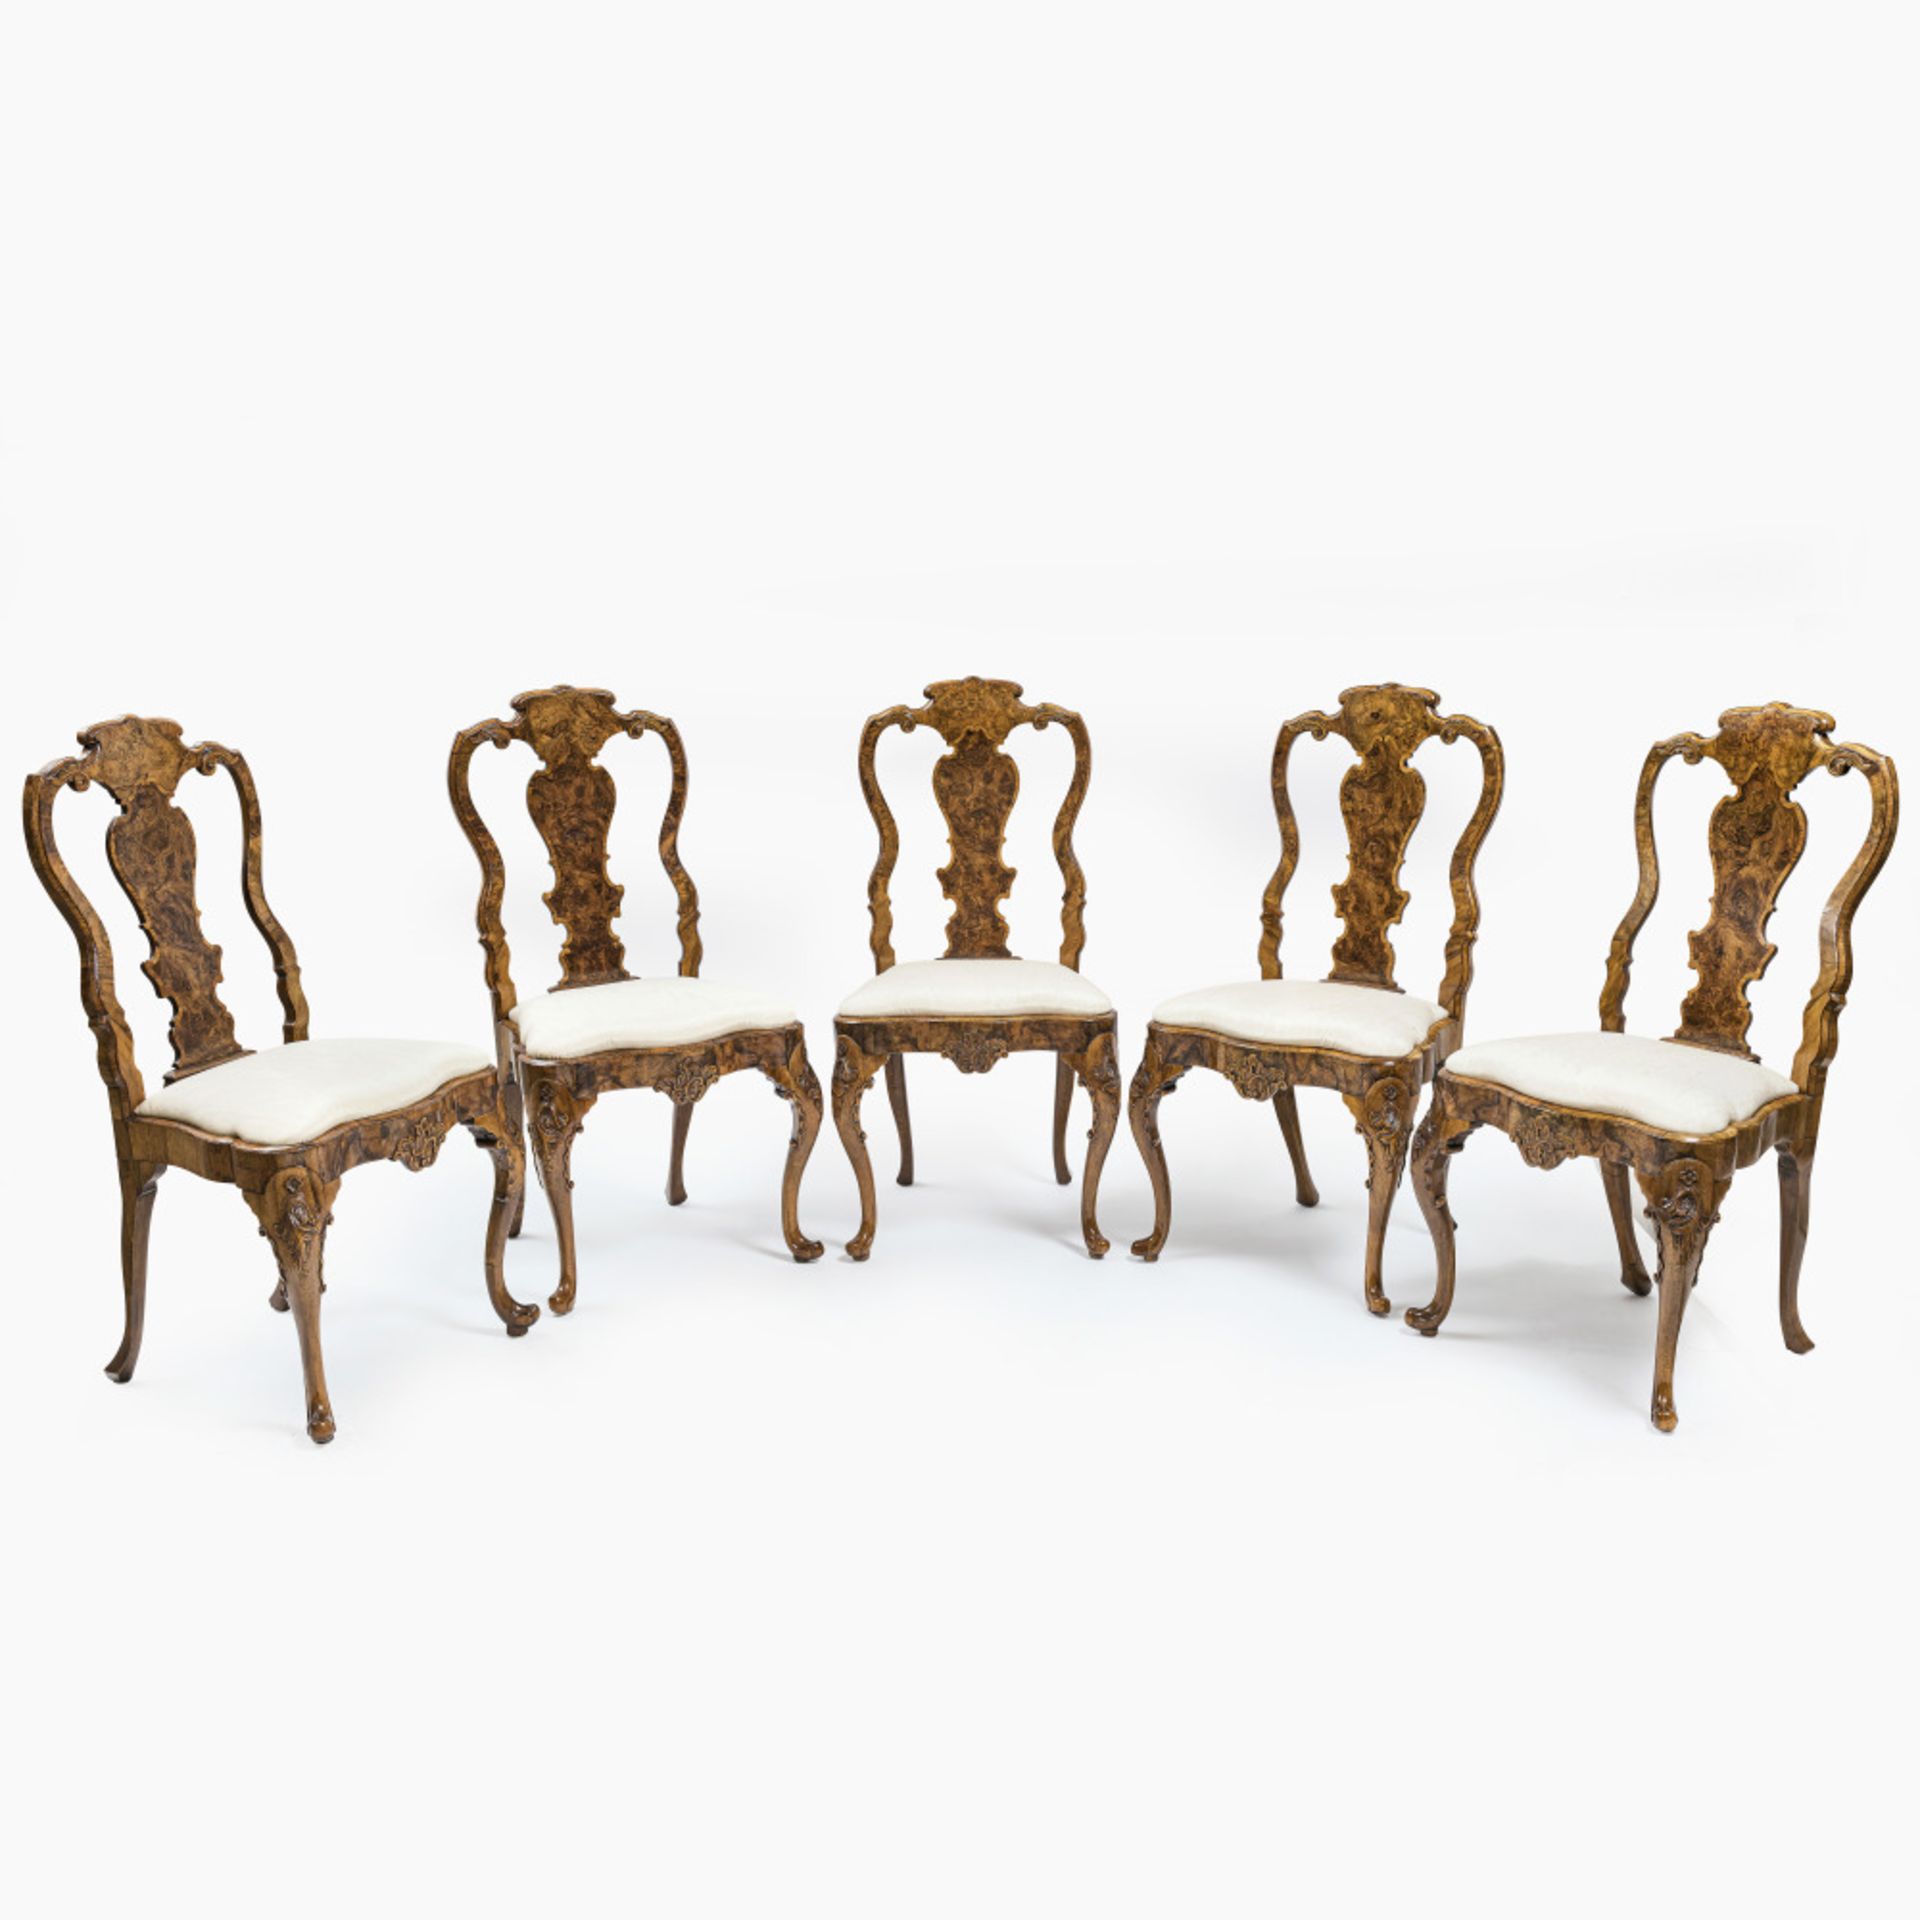 A set of five chairs - Abraham Roentgen manufactory (1711 Mülheim am Rhein - 1793 Herrnhut), Neuwied - Image 8 of 9